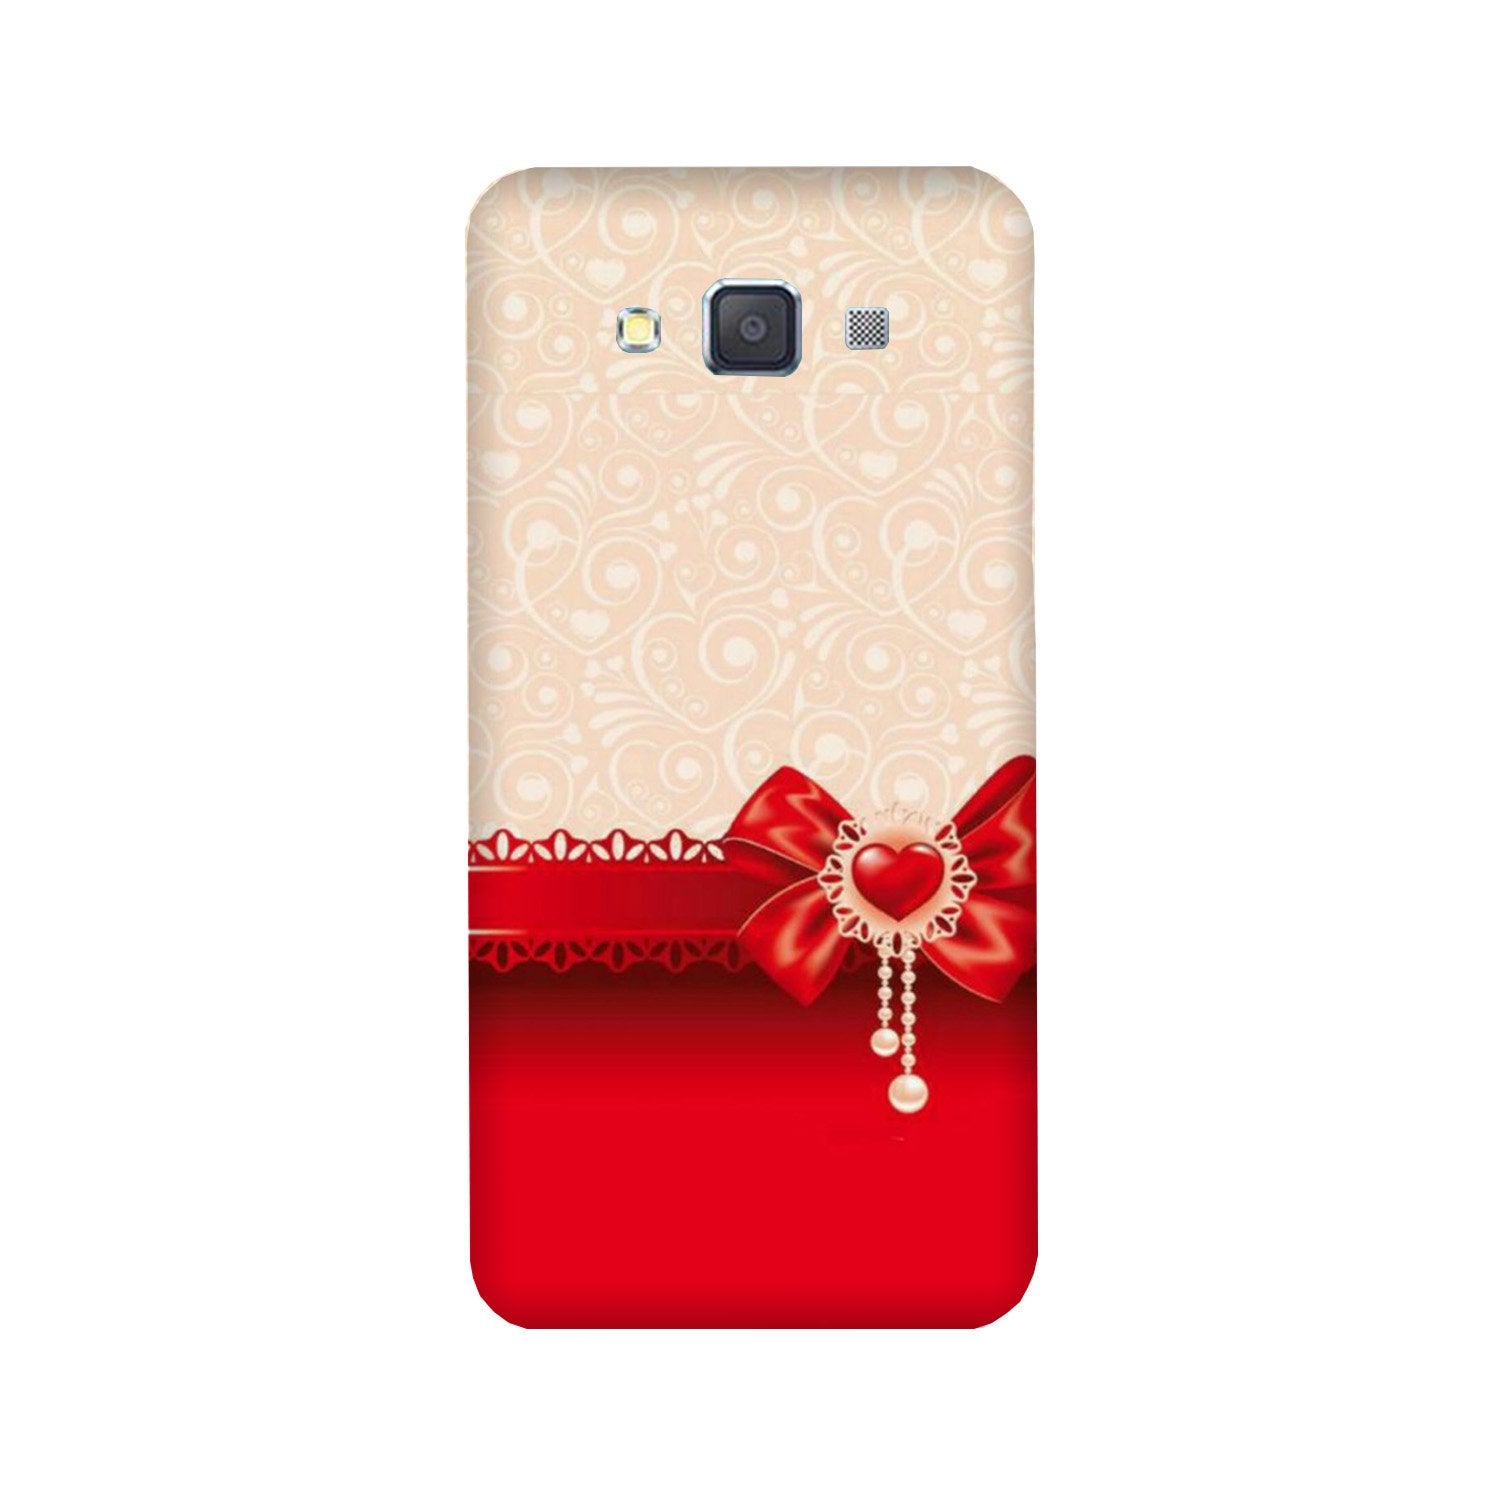 Gift Wrap3 Case for Galaxy E7